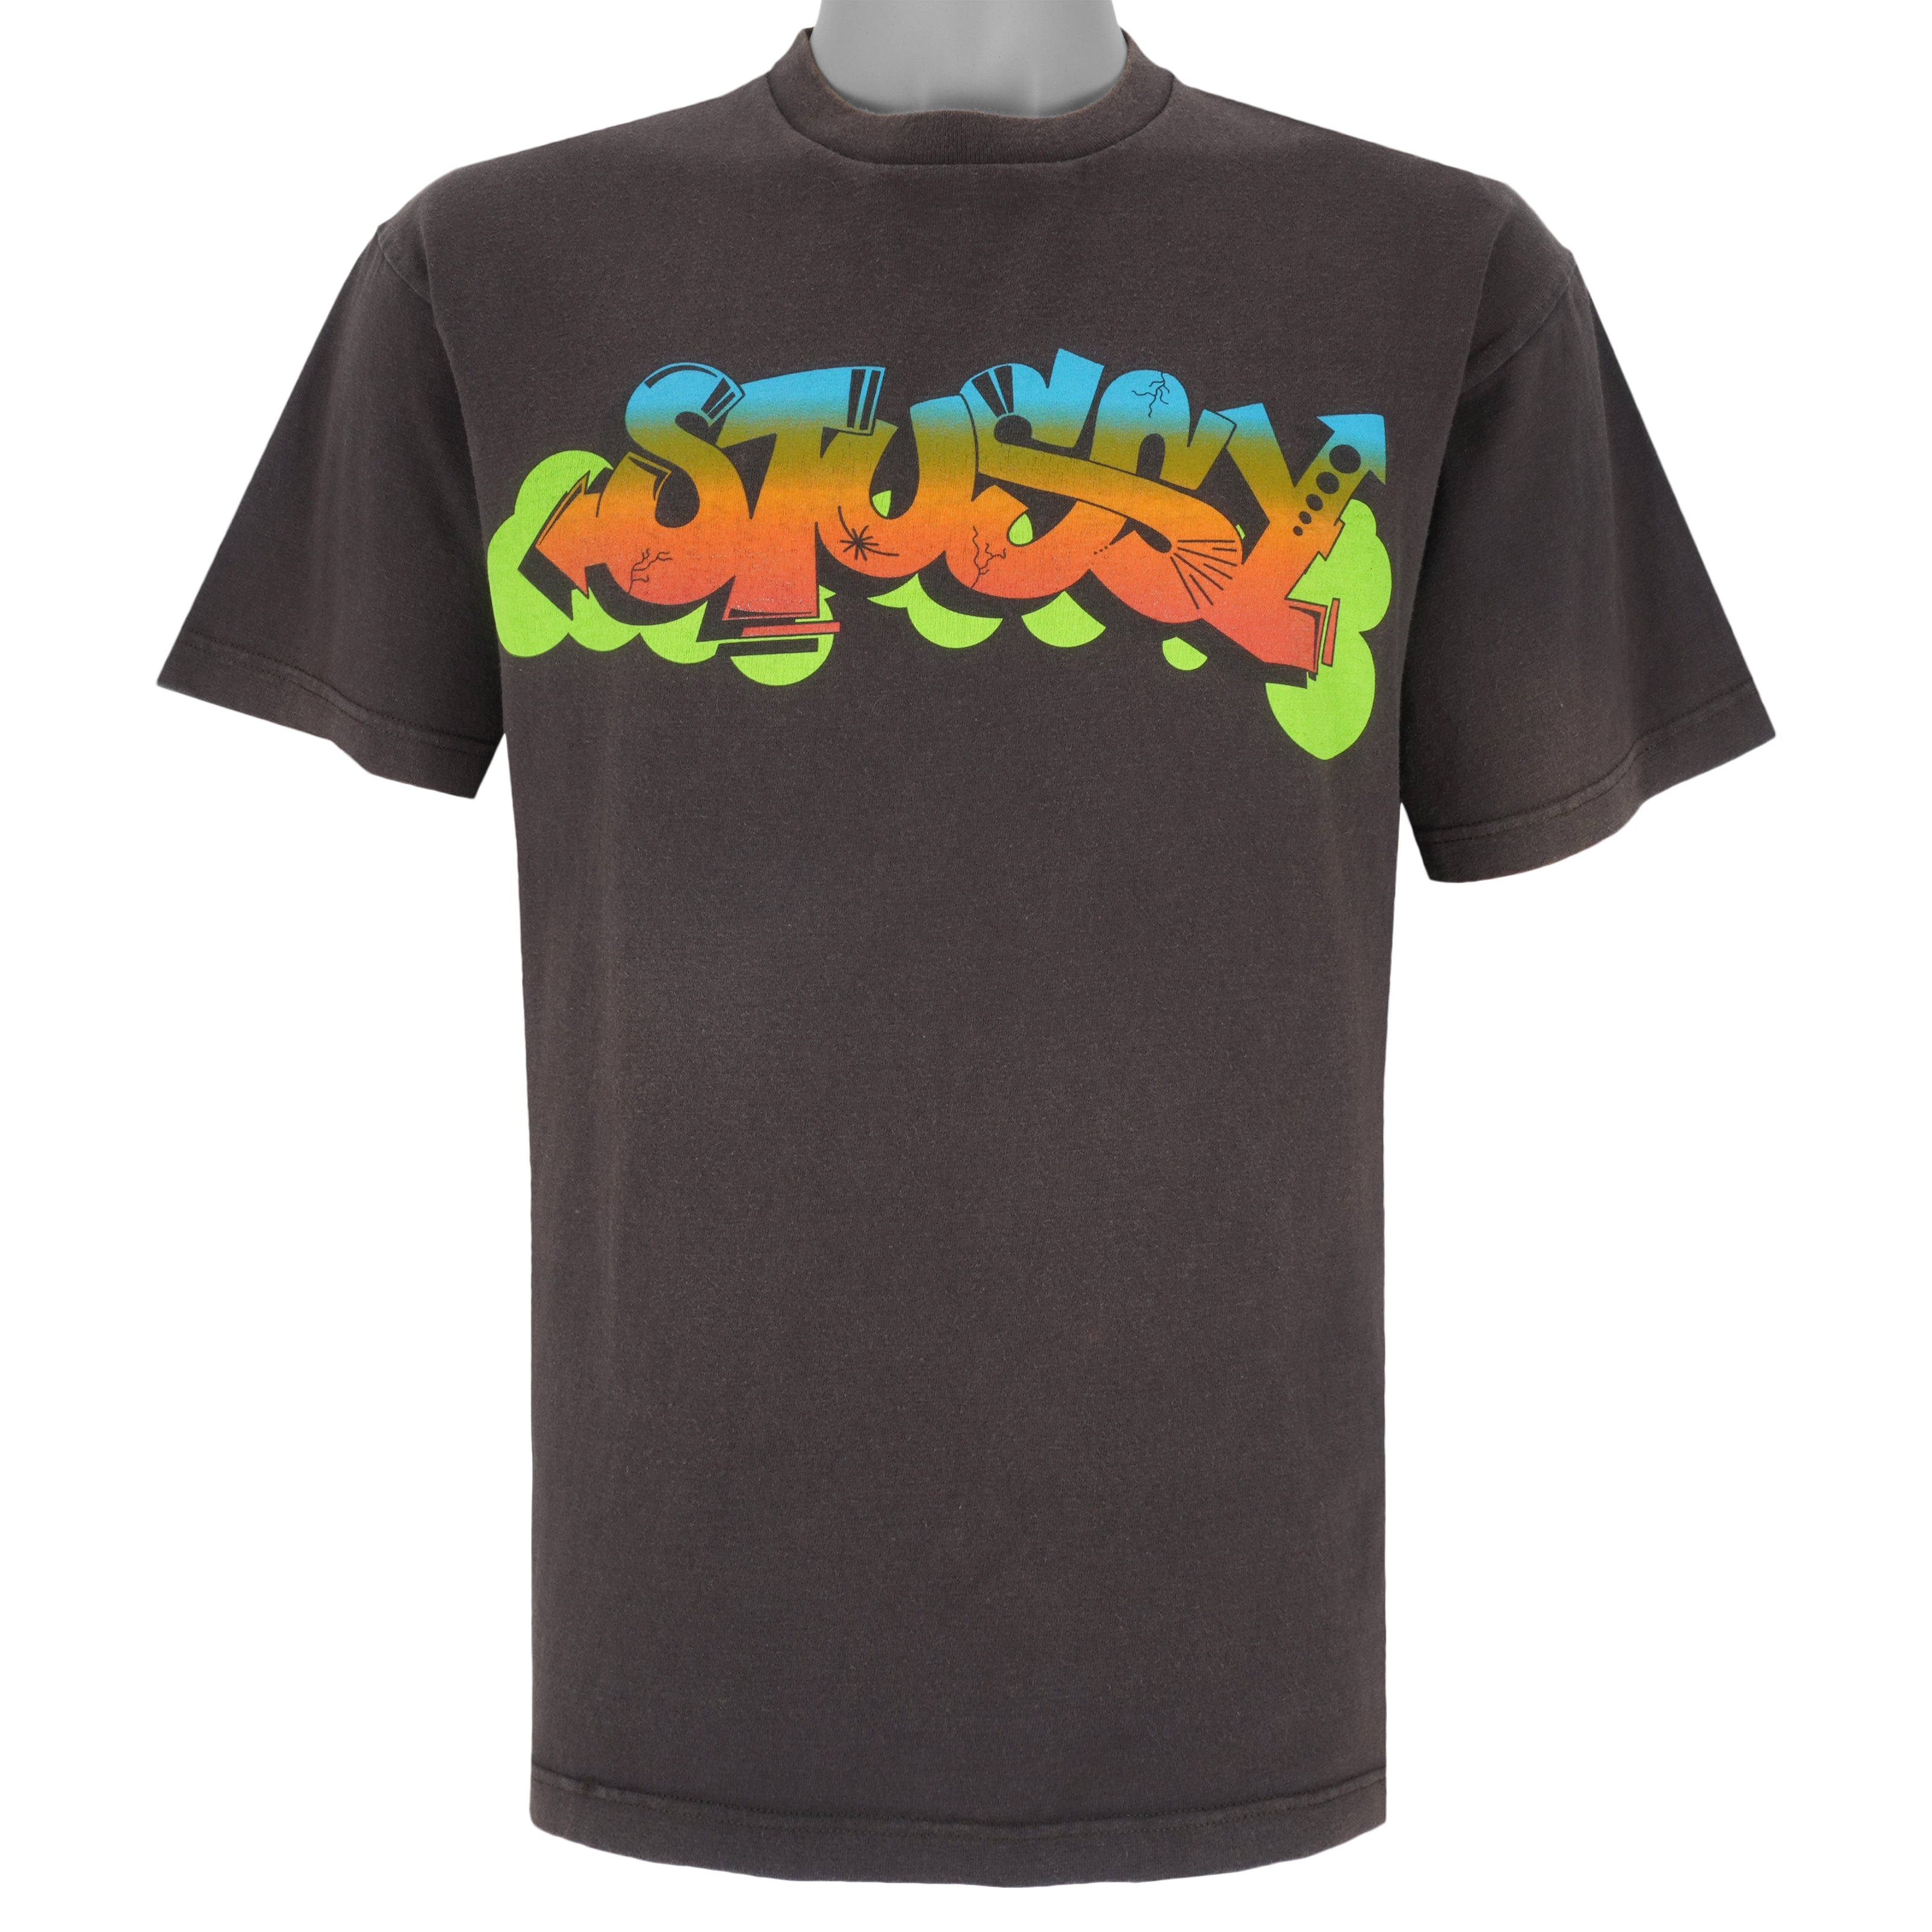 Vintage stussy shirt graffiti - Gem